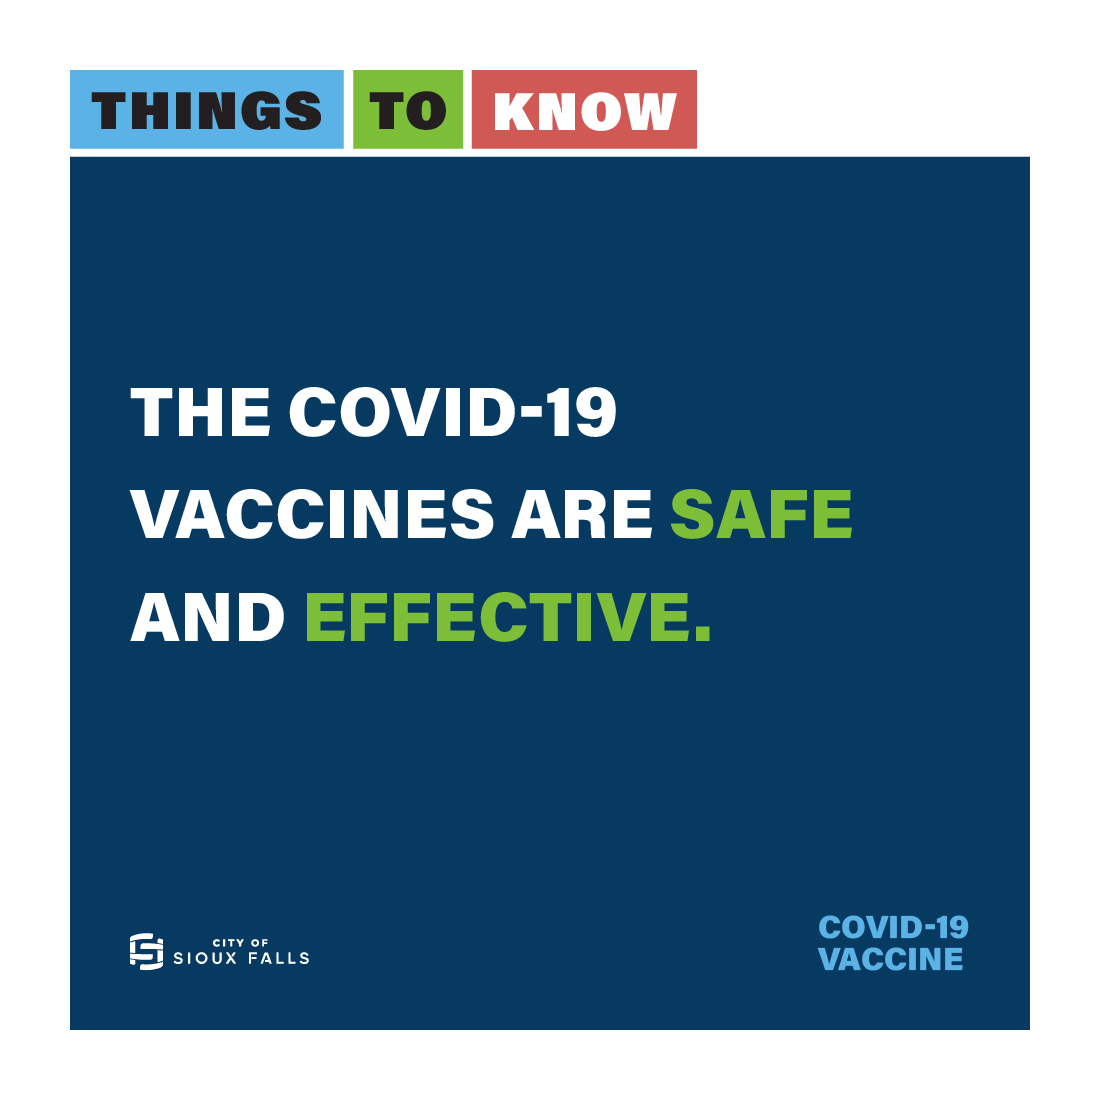 COVID-19 Vaccination Clinic